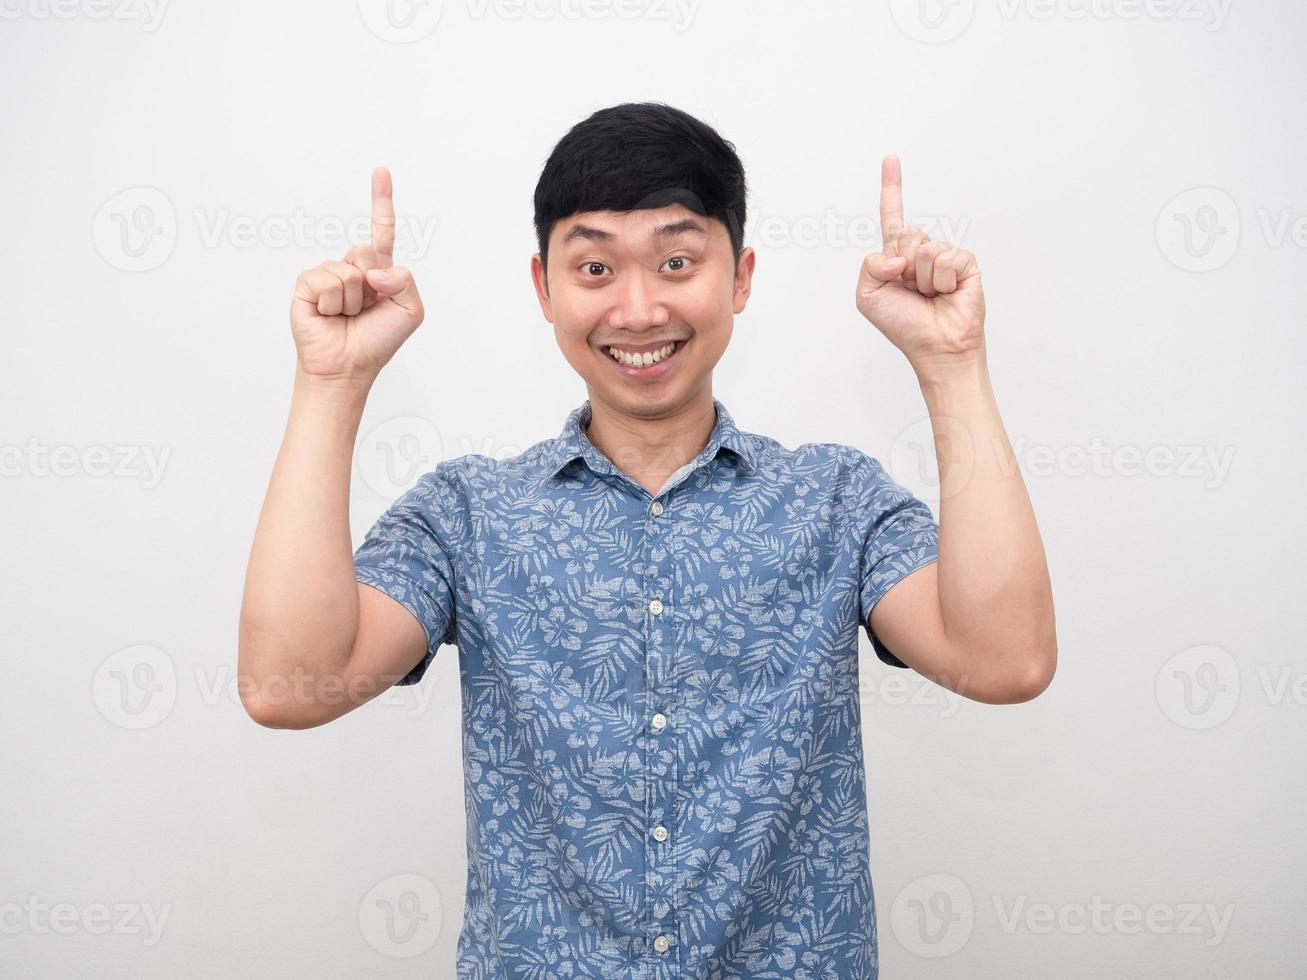 homem asiático camisa azul sorriso feliz apontar o dedo para baixo foto